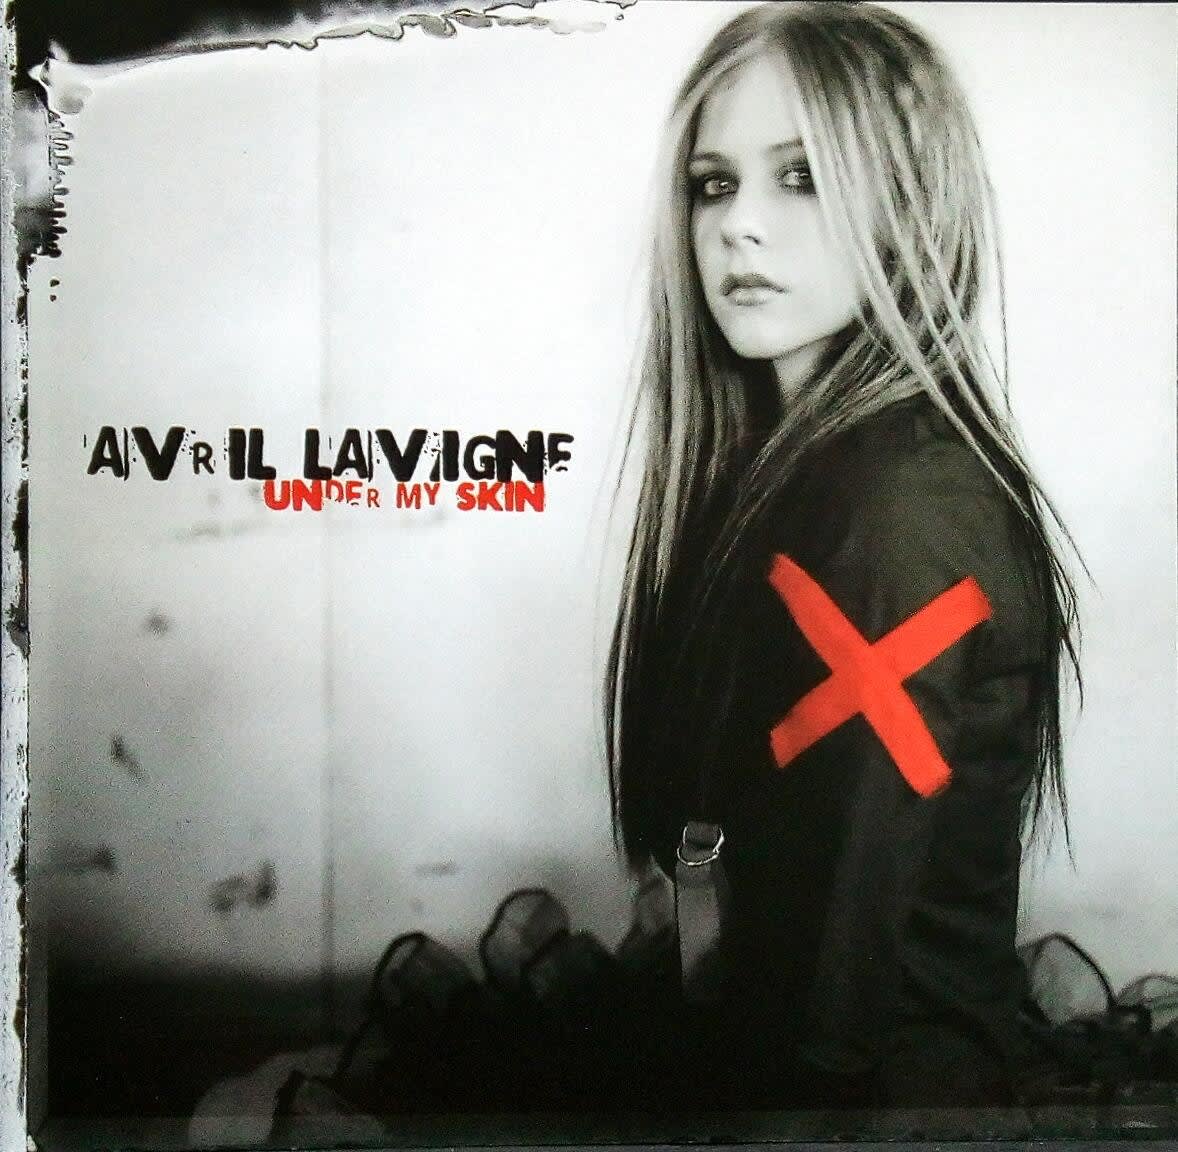 Avril Lavigne under my skin